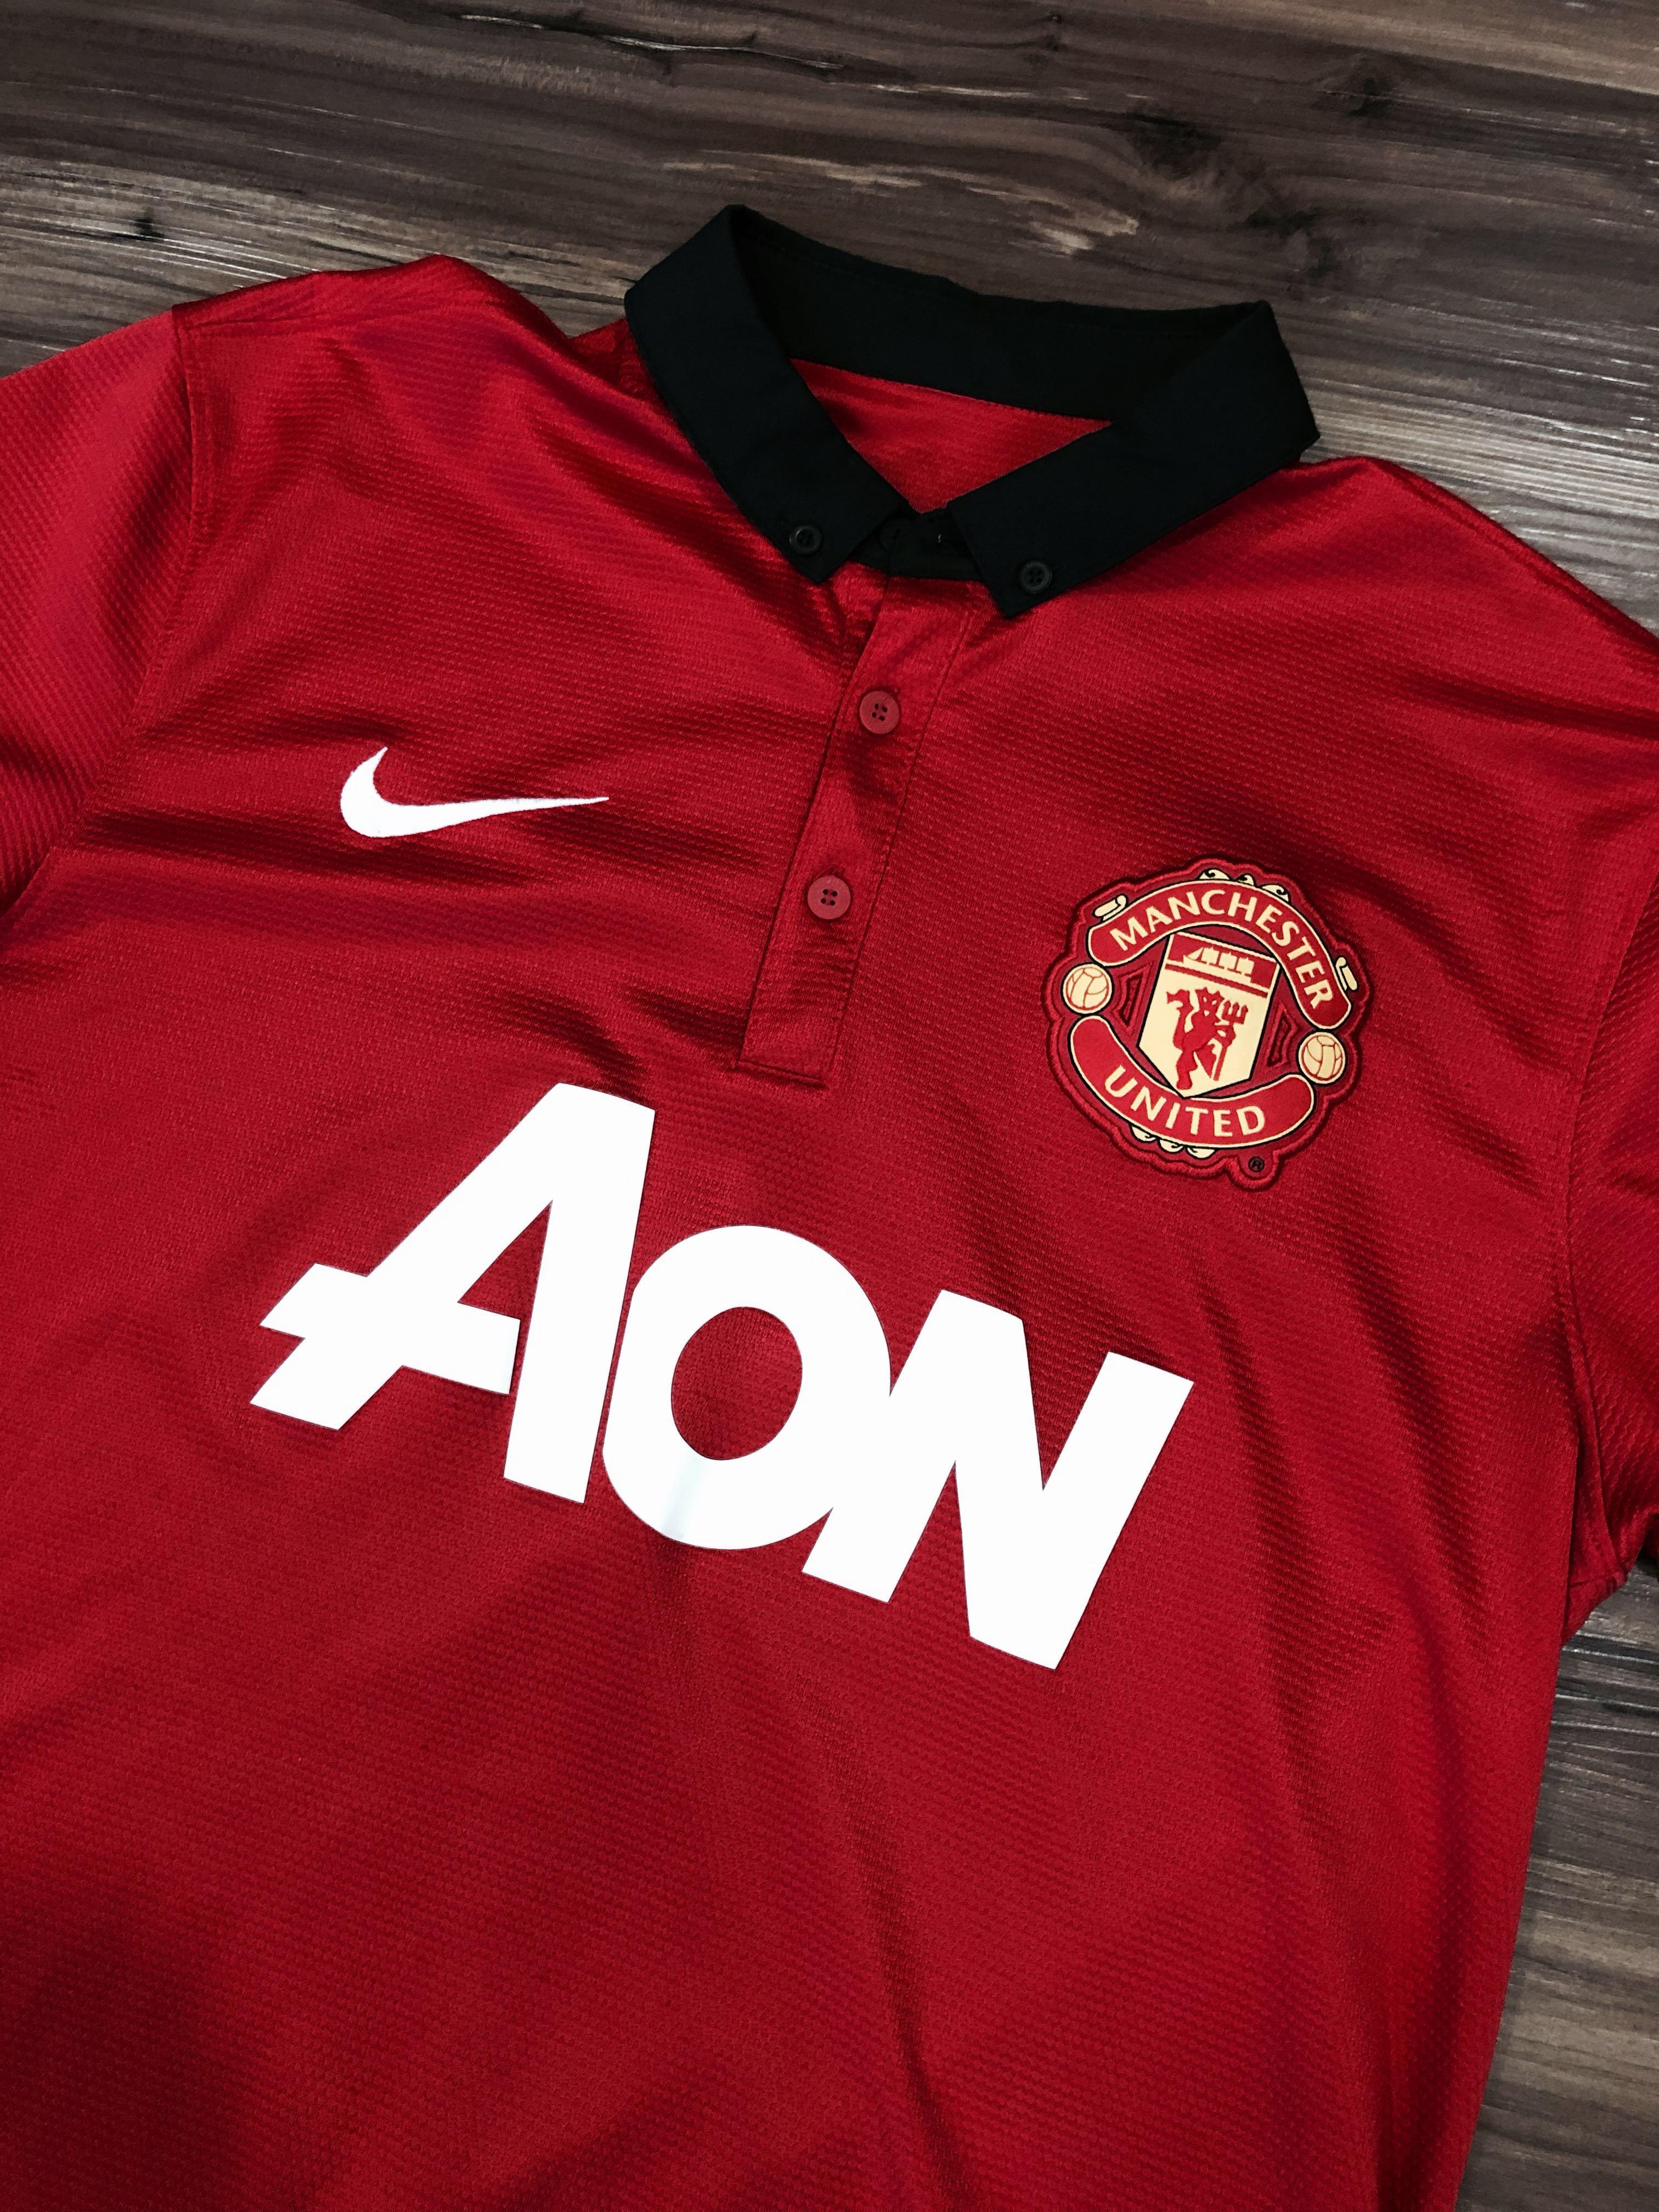 Manchester United Kit 2013 14